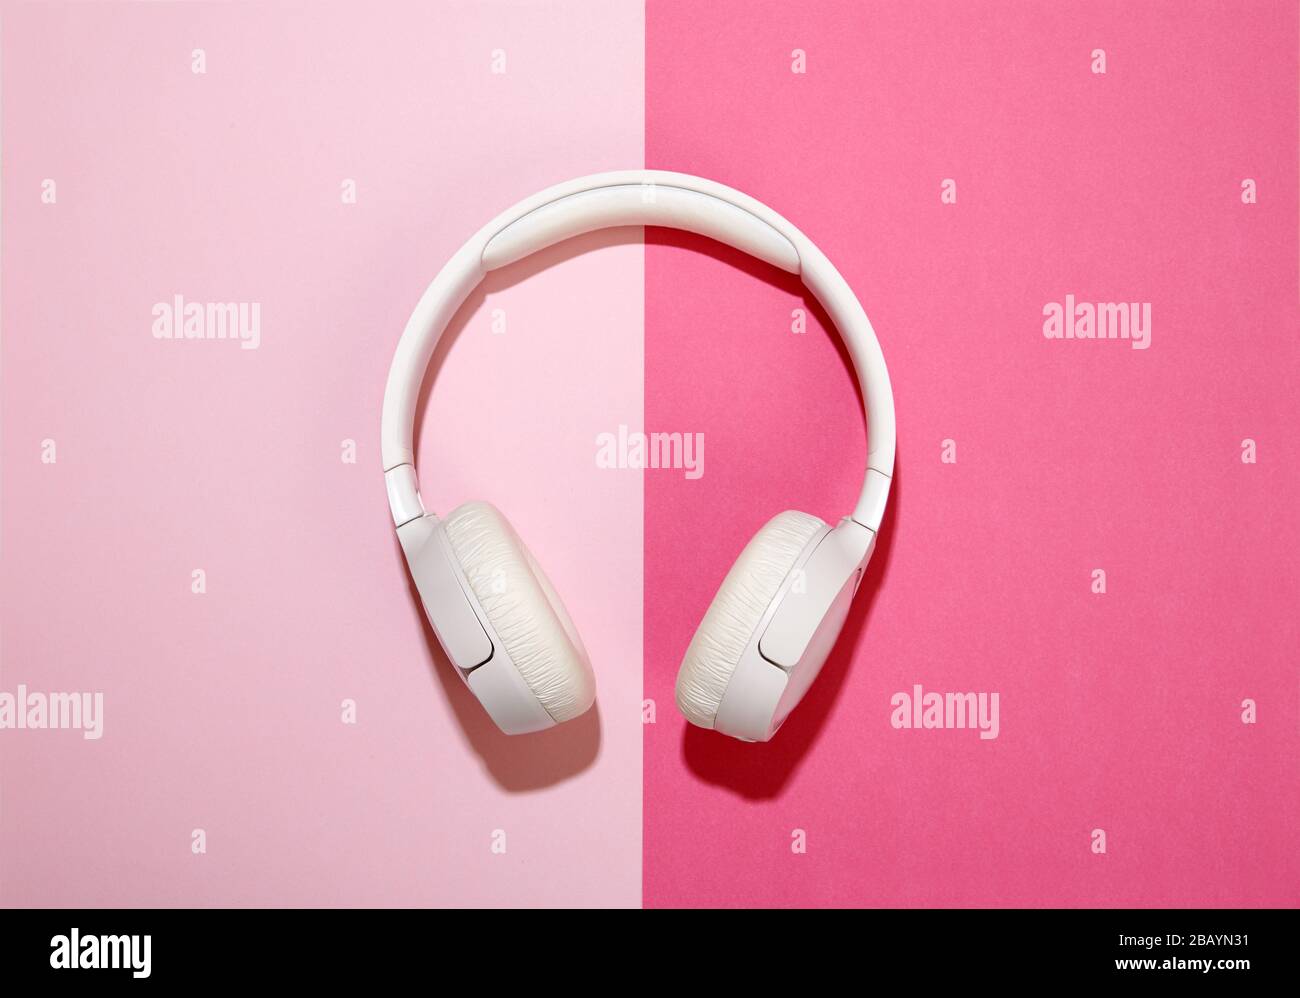 Weiße Kopfhörer auf einem duofarbenen, rosafarbenen Hintergrund, der über der Mitte mit seitlichem Kopierraum platziert ist Stockfoto